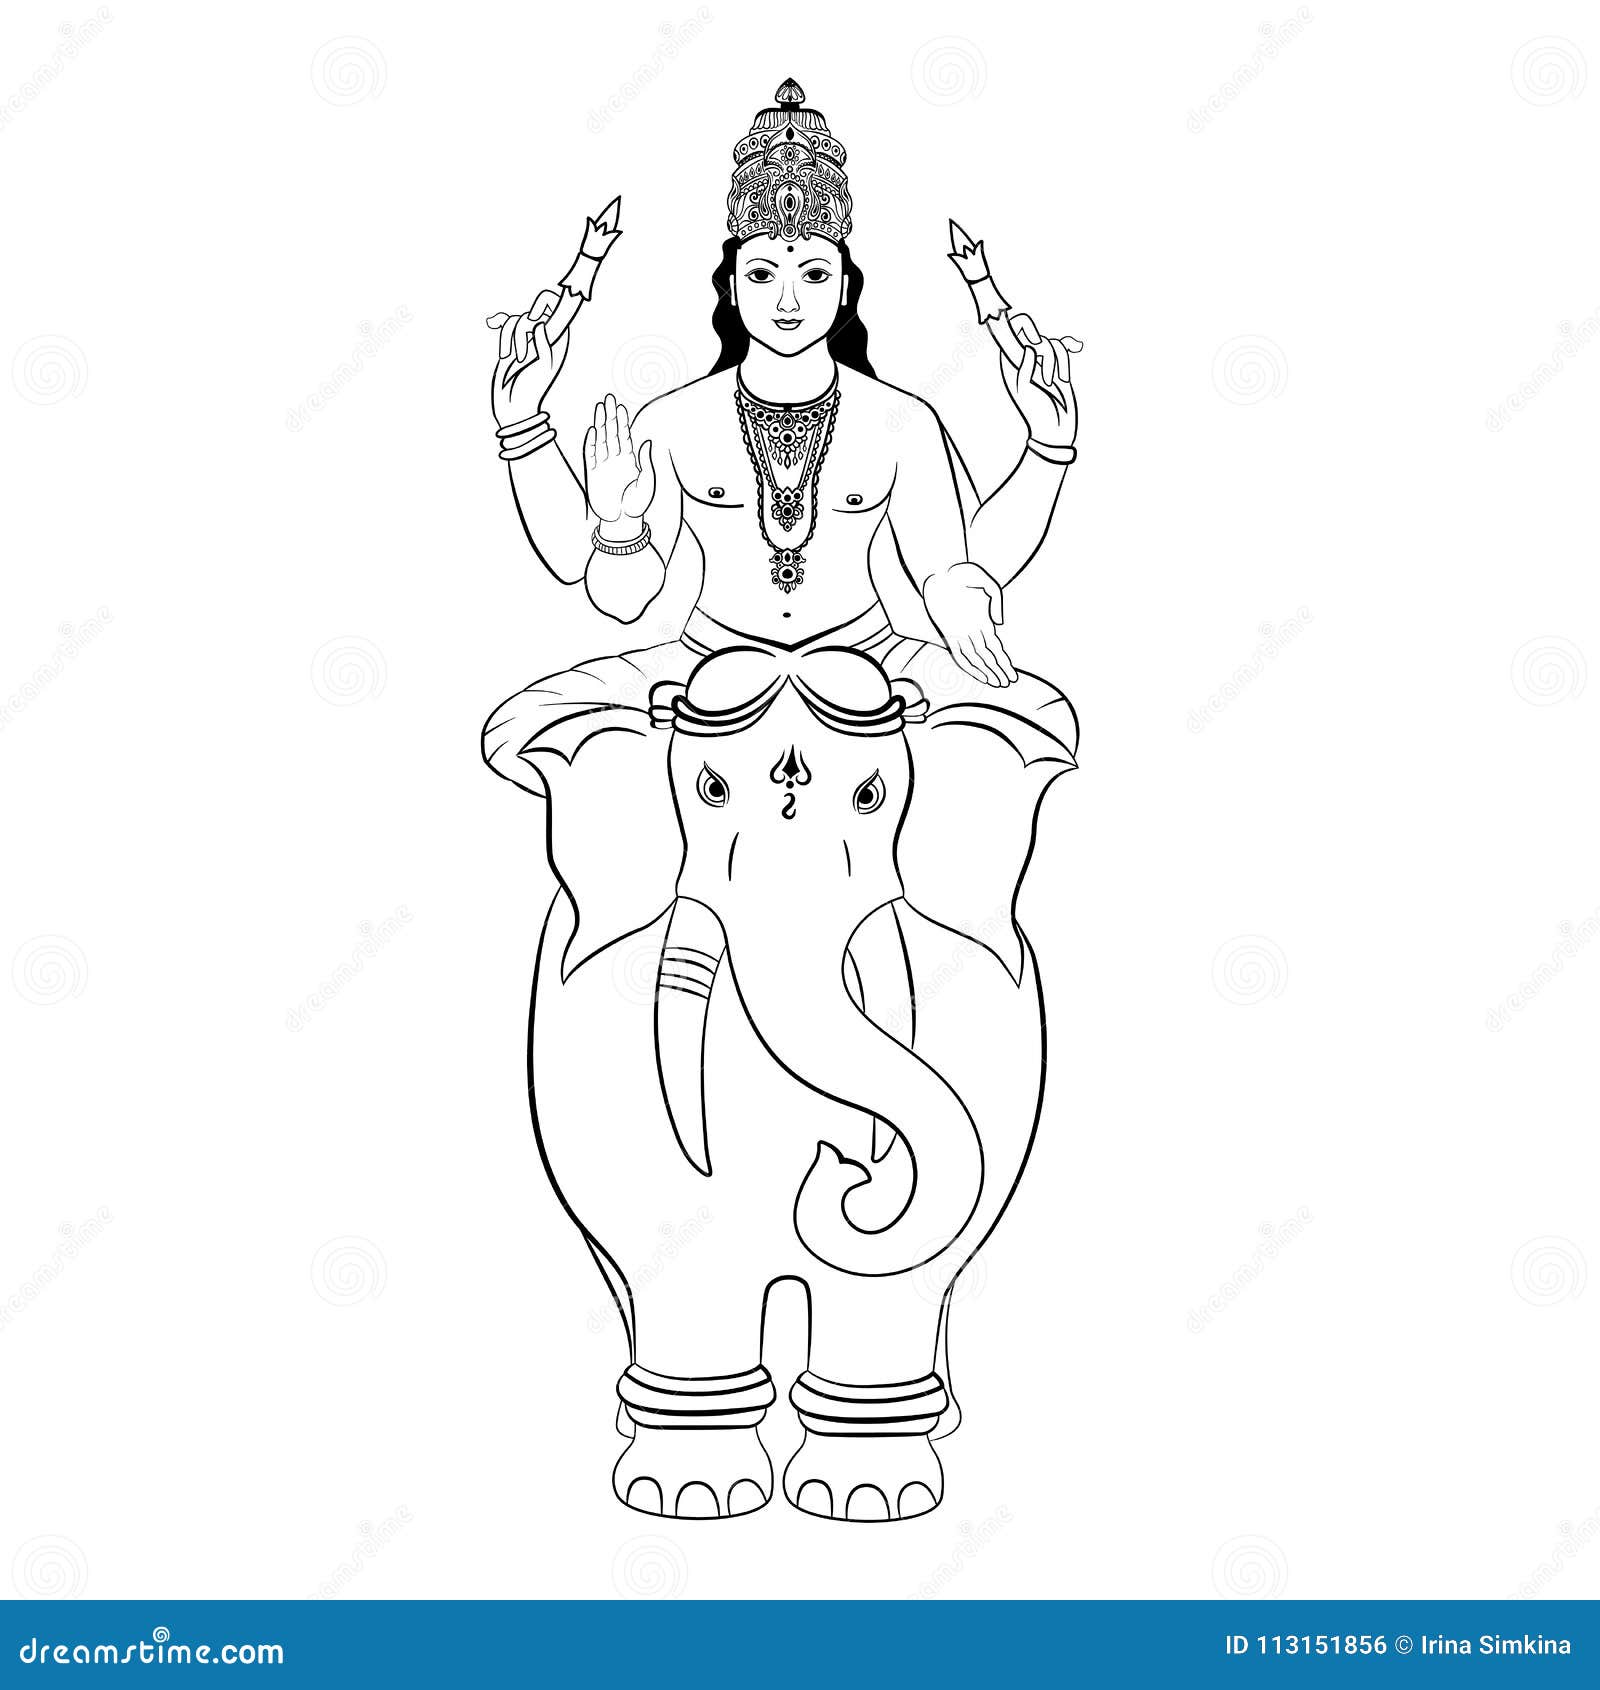 Hindu God Indra Sitting on the Elephant. Vector Stock Vector ...